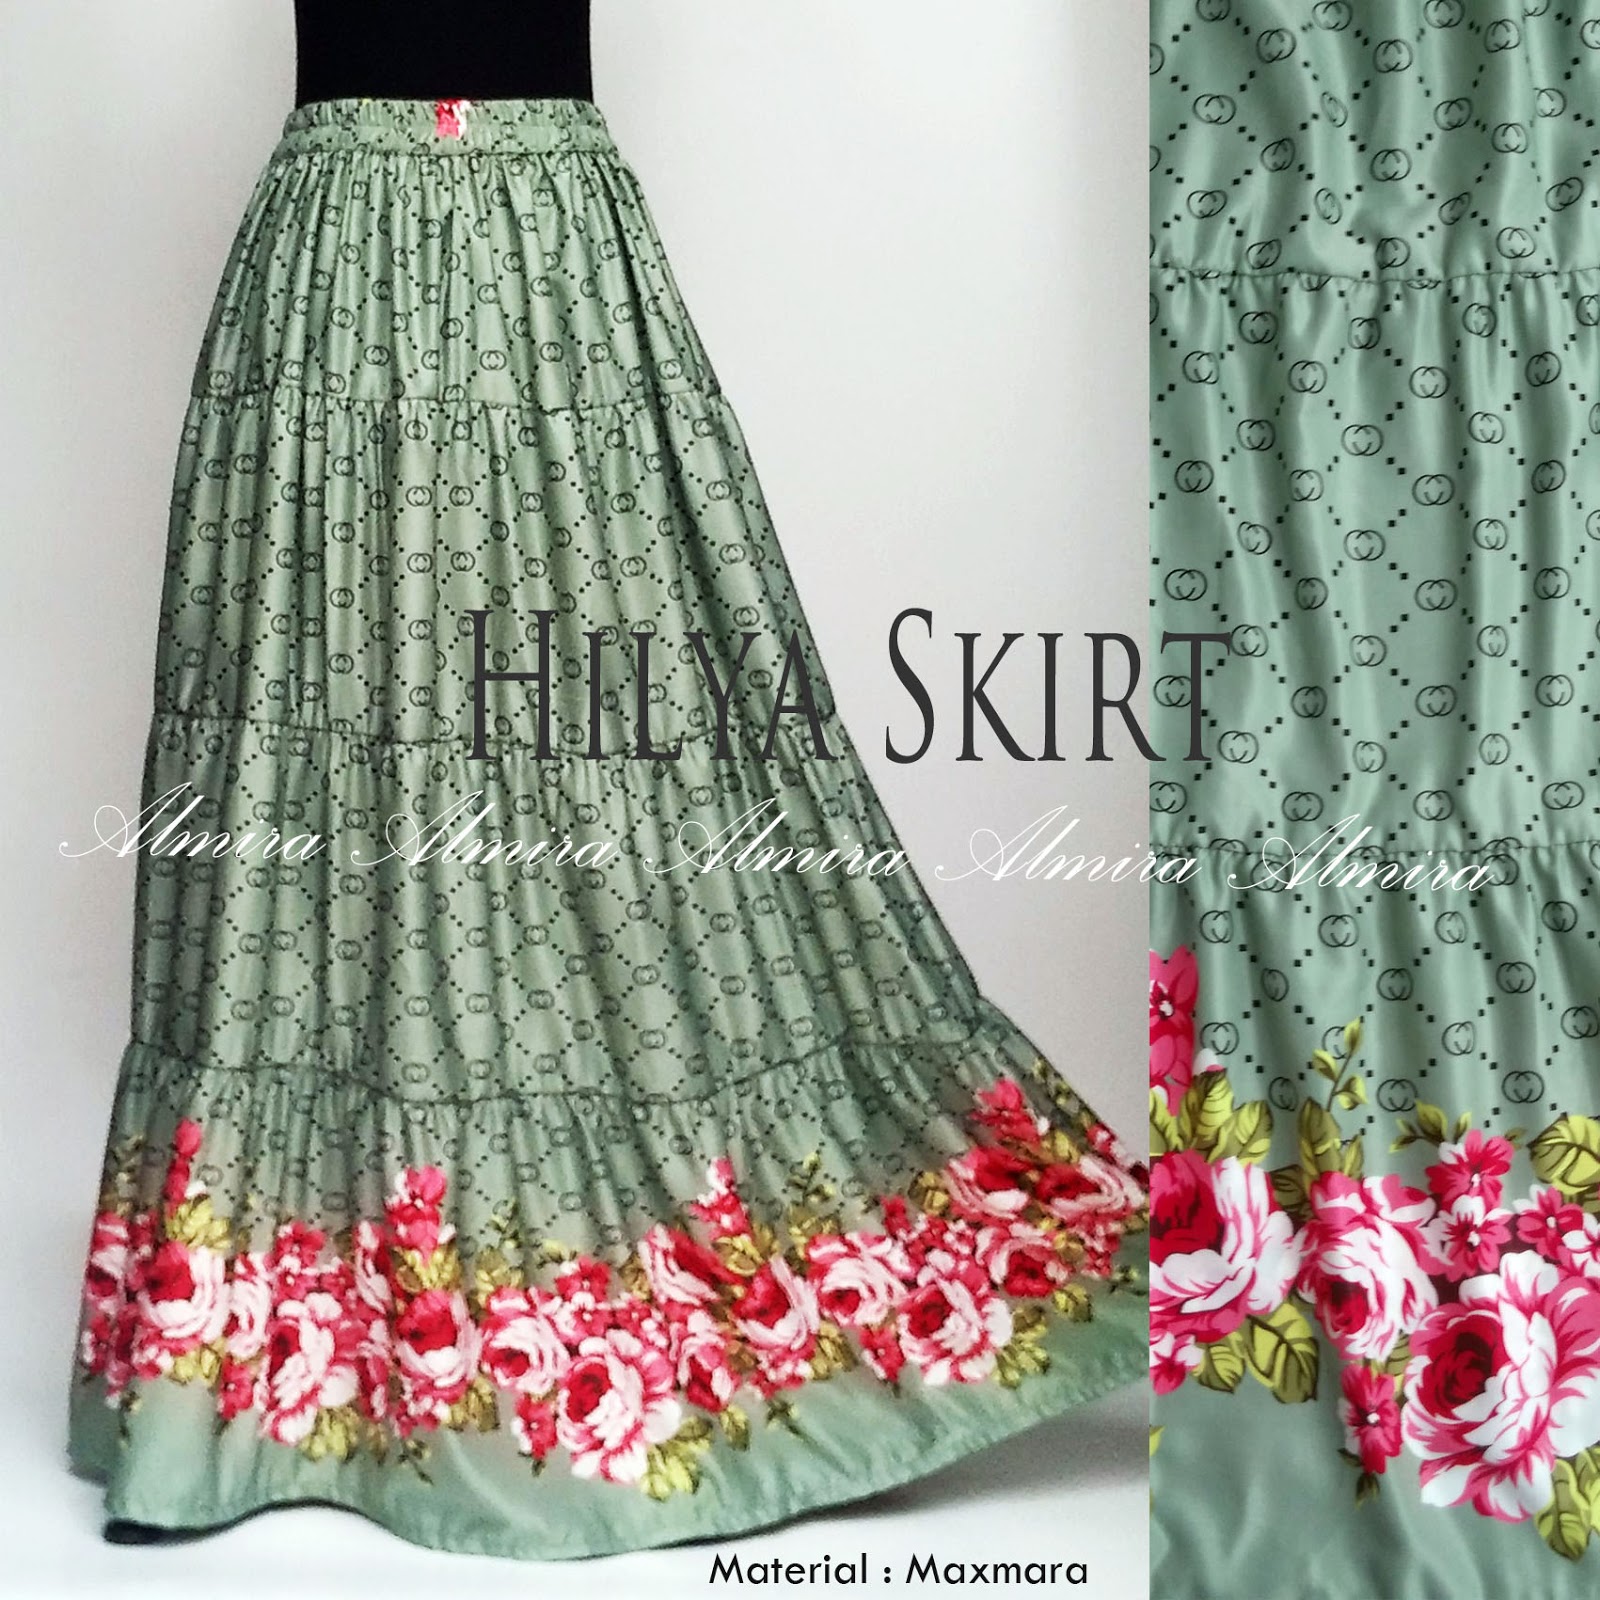 Rok Panjang Muslimah Maxmara Cantik Hilya Skirt by Almira 